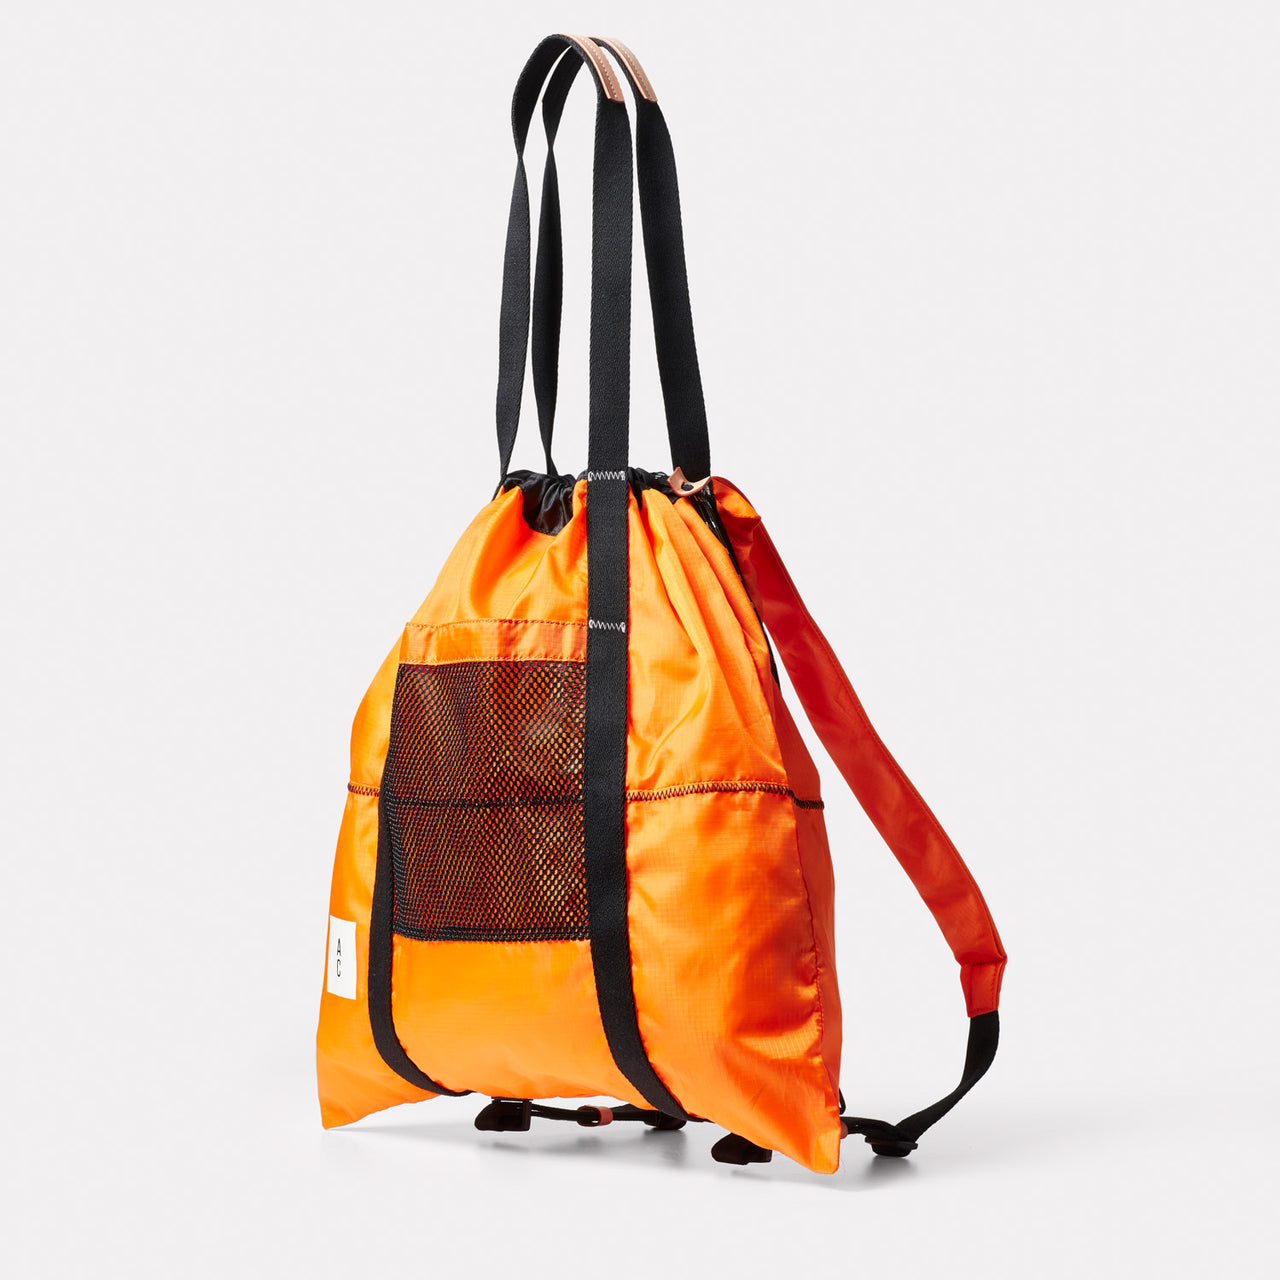 Harvey Packable Drawstring Tote/Backpack in Orange